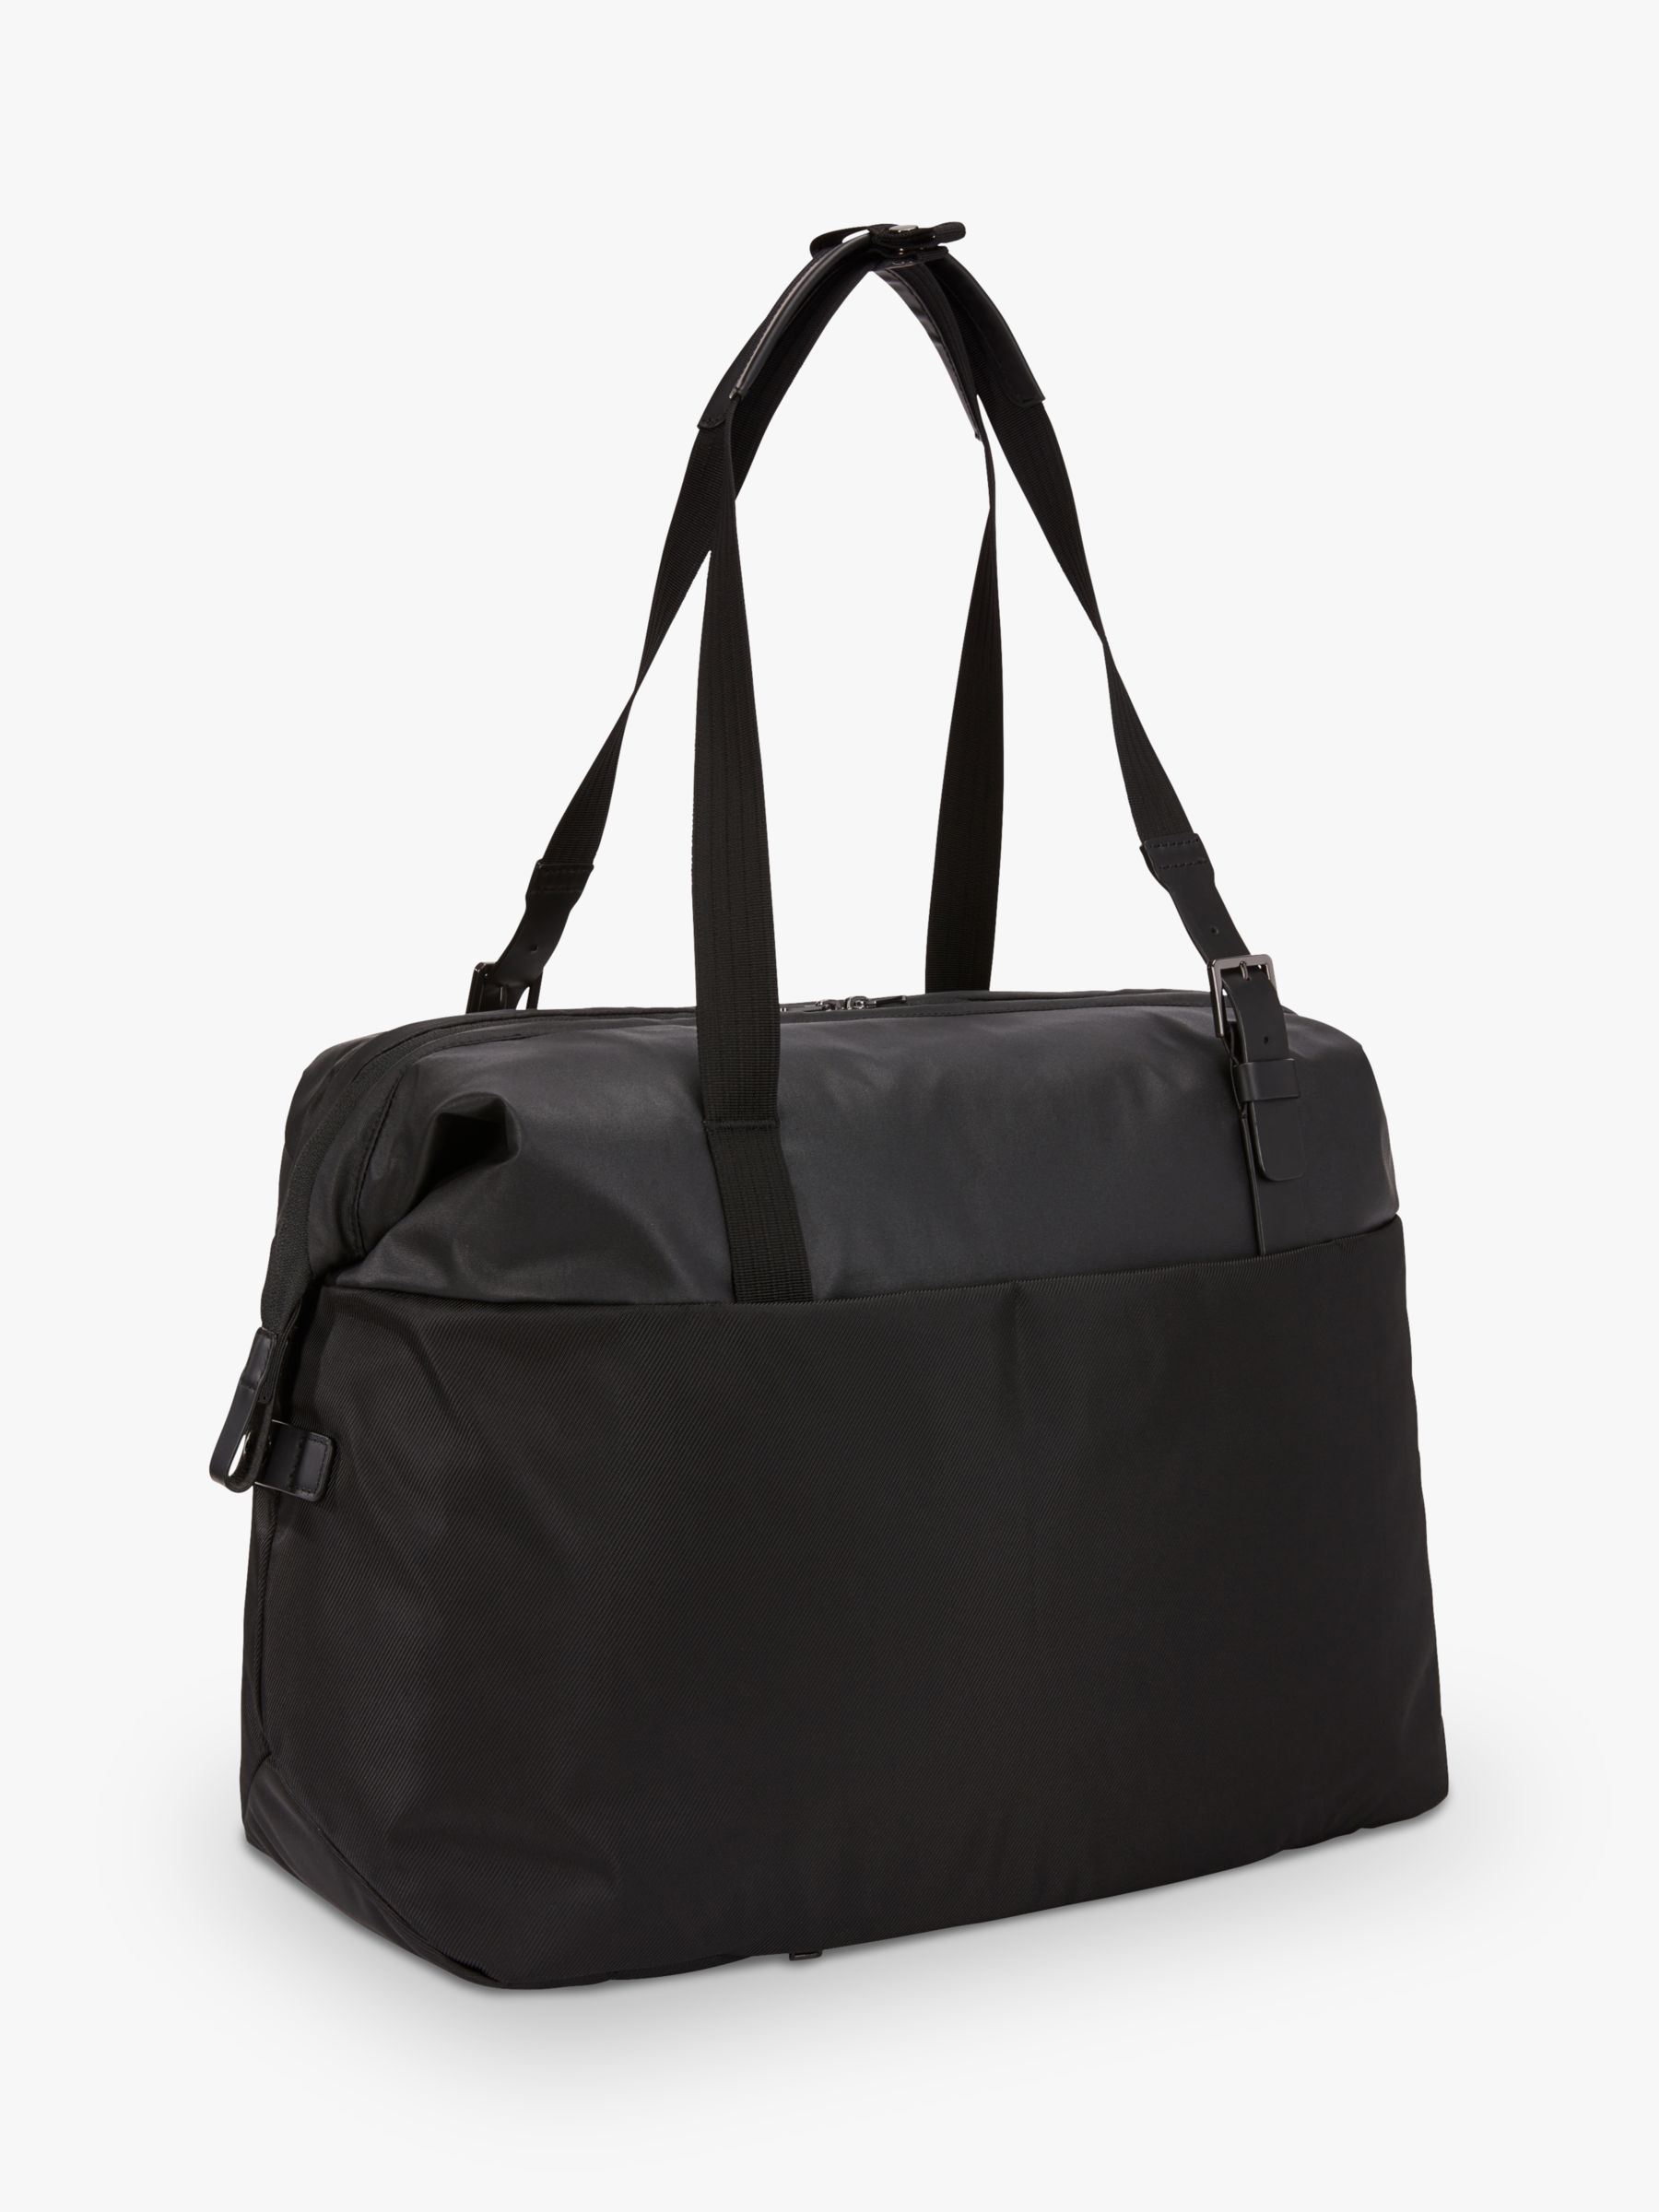 Thule Spira 37L Weekender Duffel Bag, Black